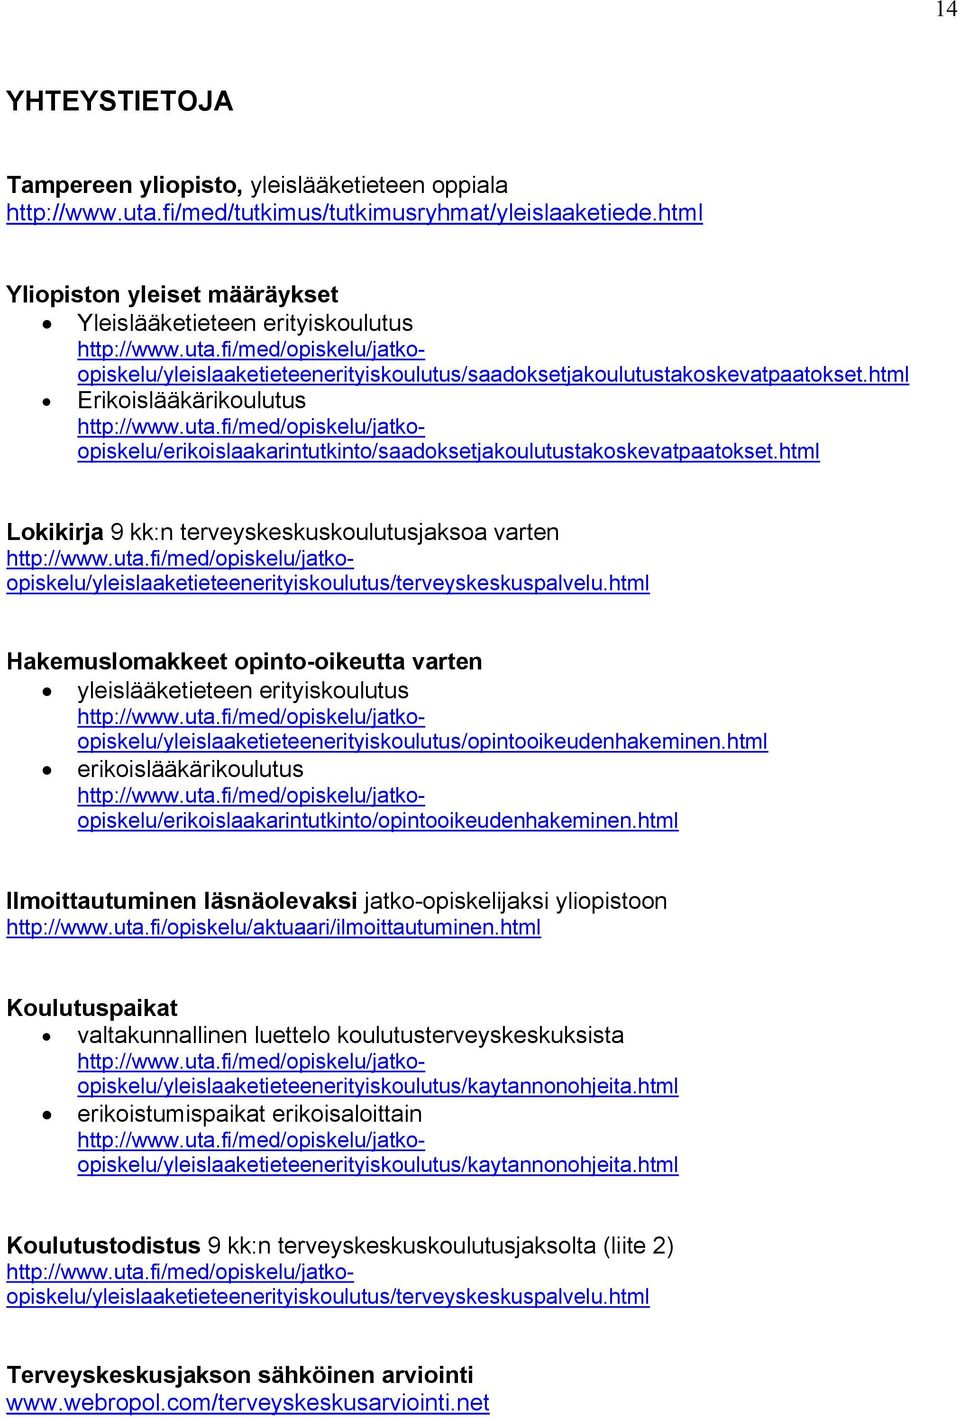 html Lkikirja 9 kk:n terveyskeskuskulutusjaksa varten http://www.uta.fi/med/piskelu/jatkpiskelu/yleislaaketieteenerityiskulutus/terveyskeskuspalvelu.